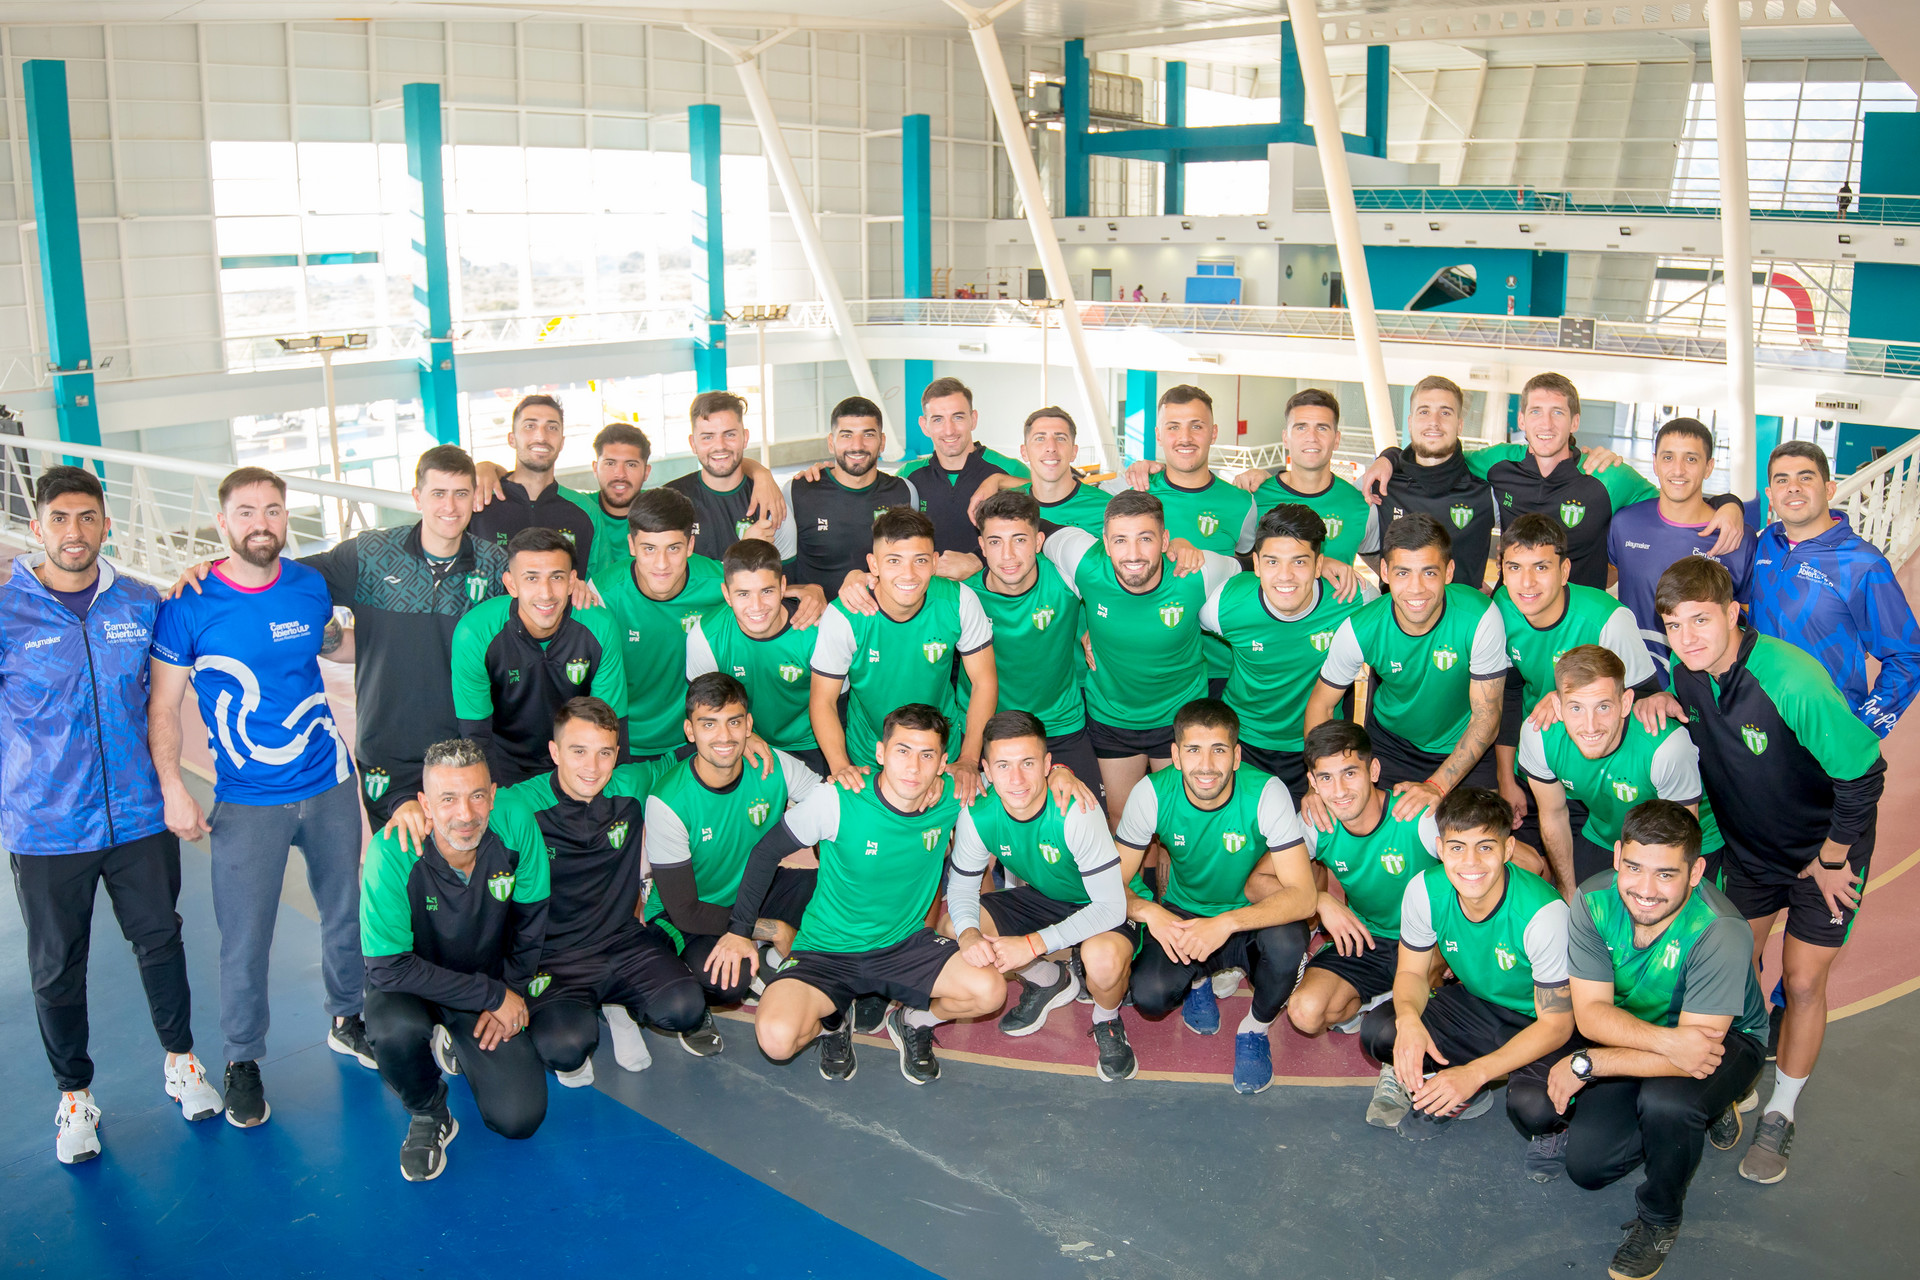 El club Ferro Carril Oeste probará jugadores de básquet y futbol